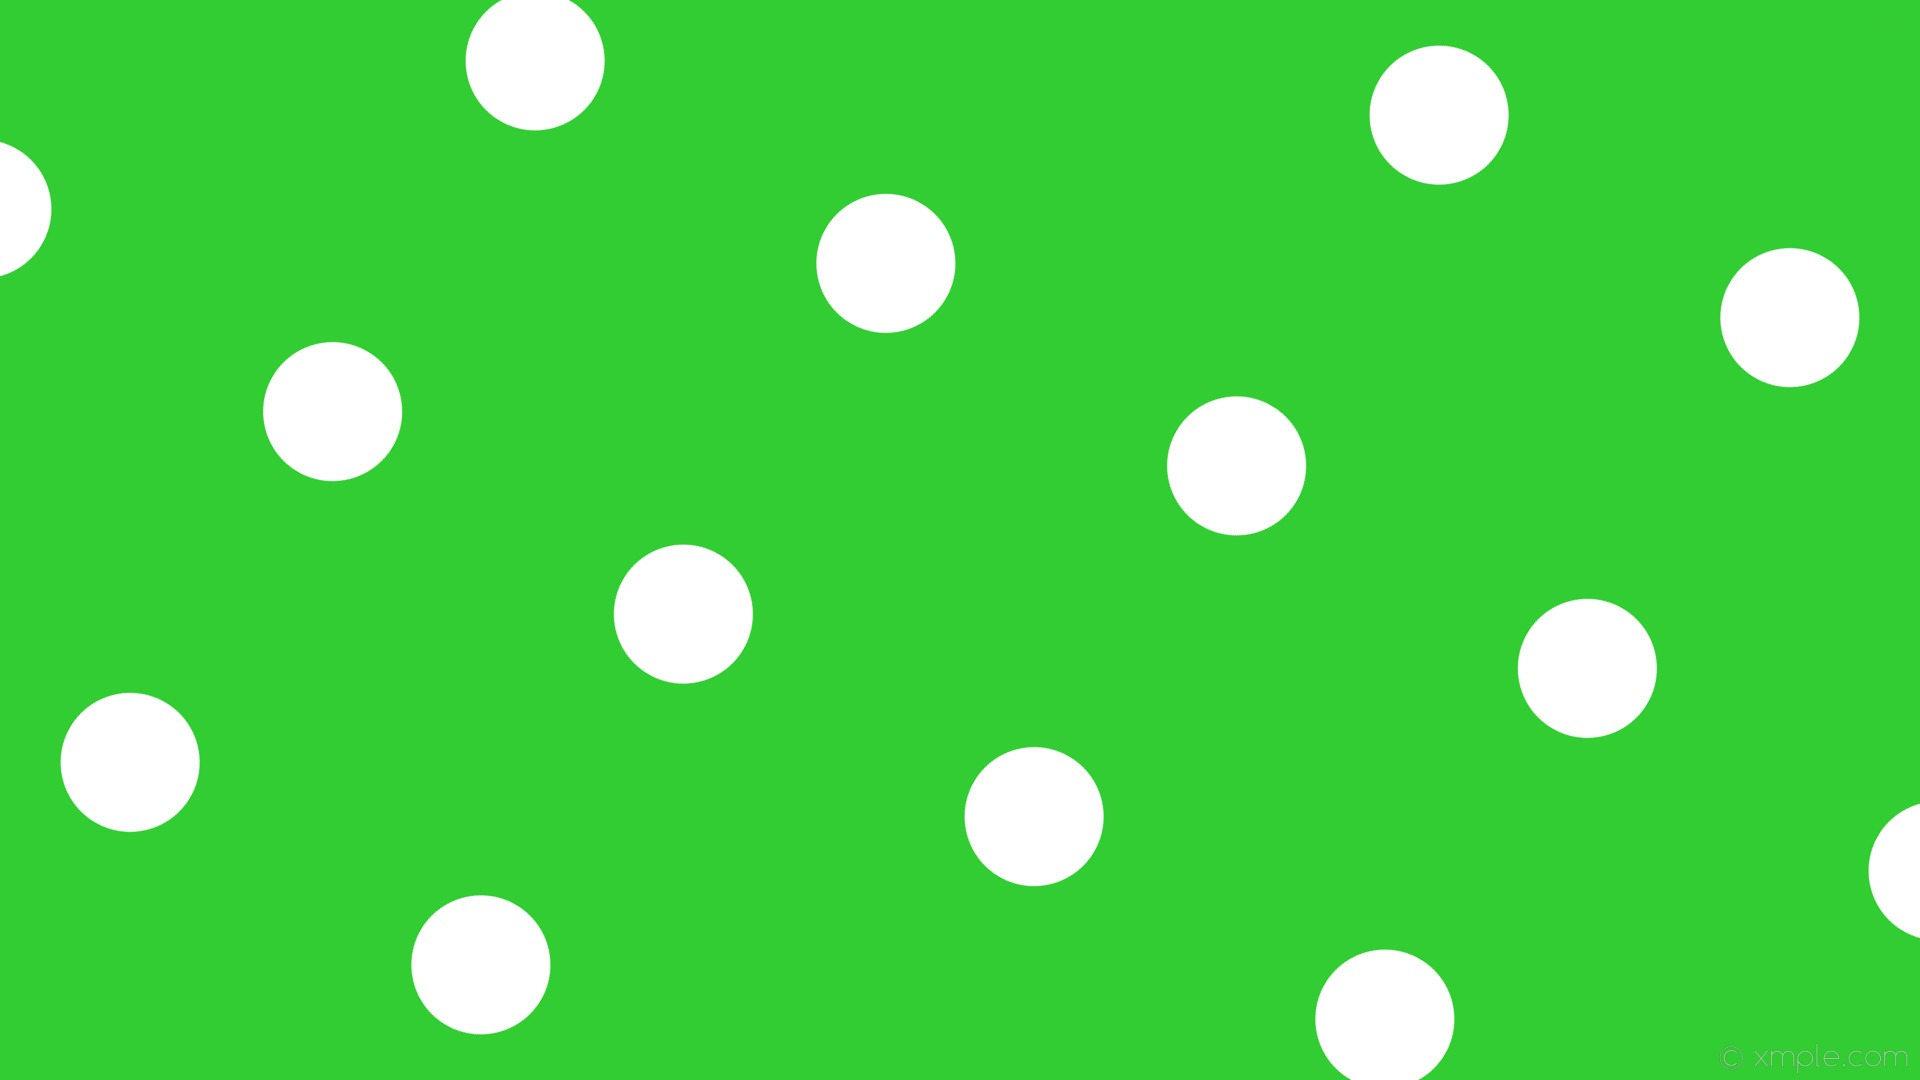 1920x1080 wallpaper polka spots green dots white lime green #32cd32 #ffffff 330Â°  139px 405px